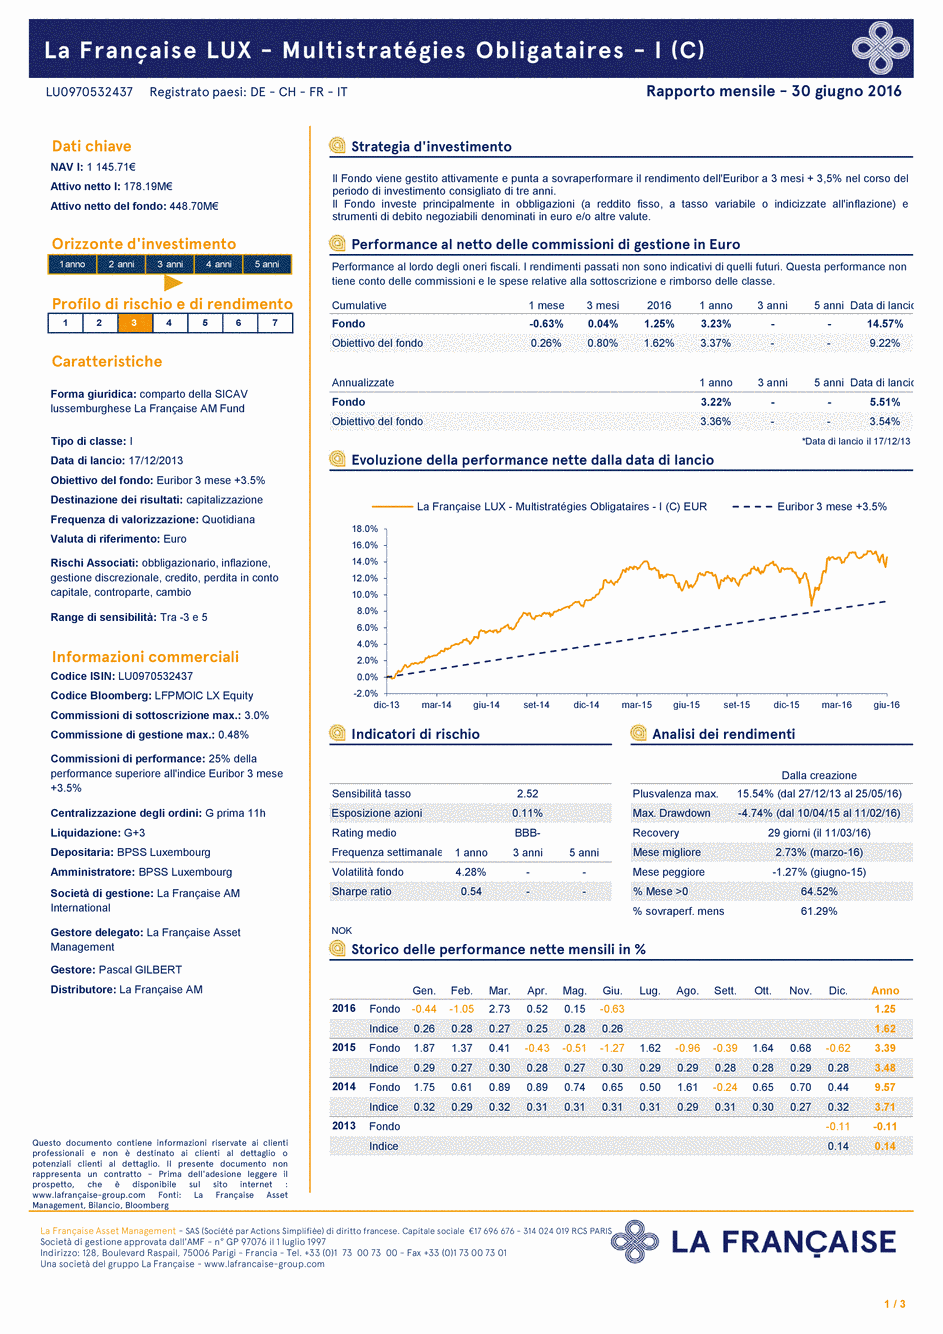 Reporting La Française LUX - Multistratégies Obligataires - I (C) EUR - 30/06/2016 - Italien